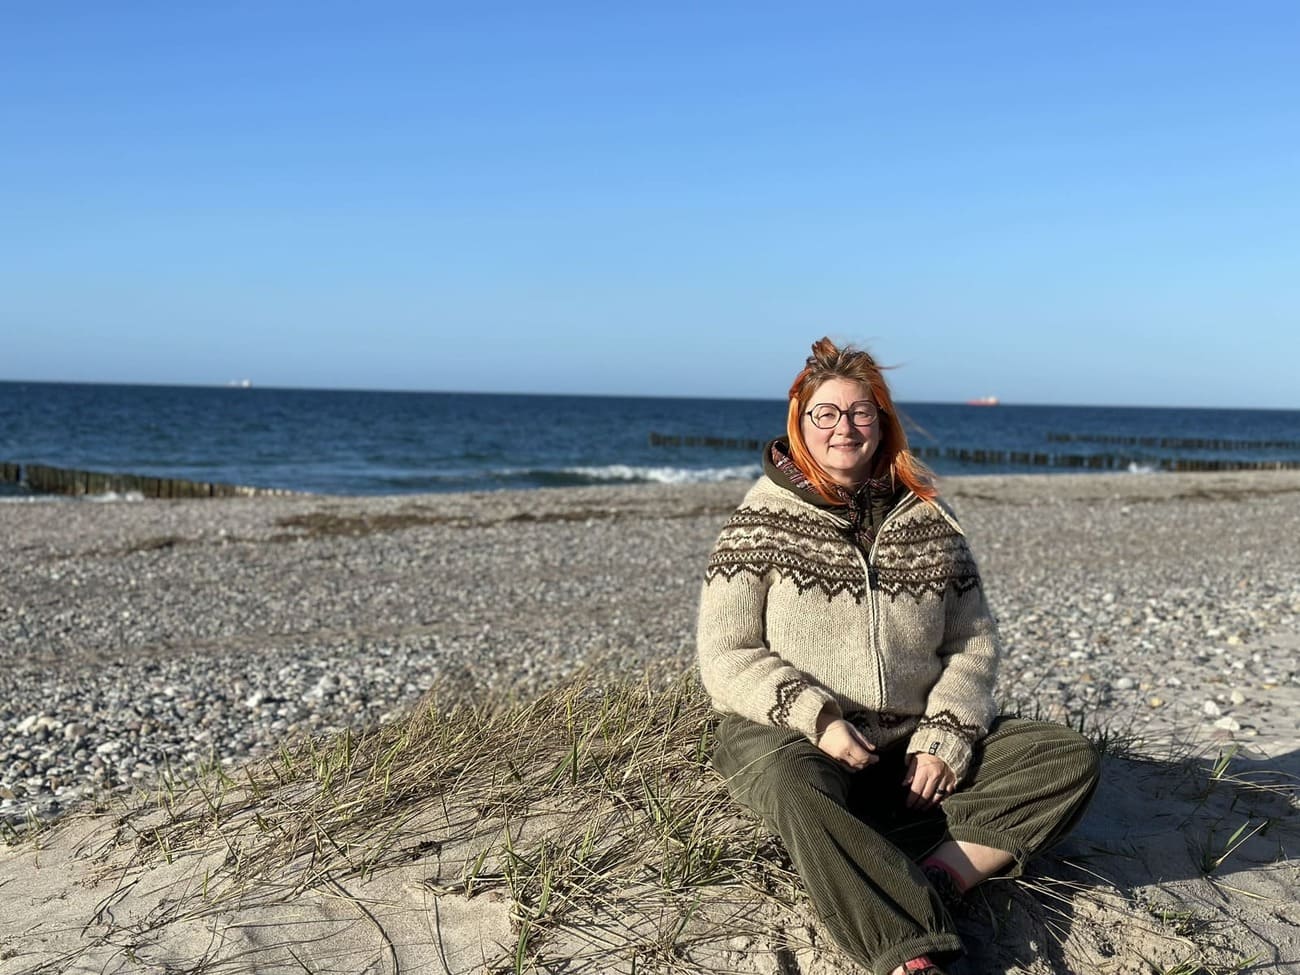 Andrea sitzen, hinter ihr das Meer und blauer Himmel, sie sieht sehr glücklich aus